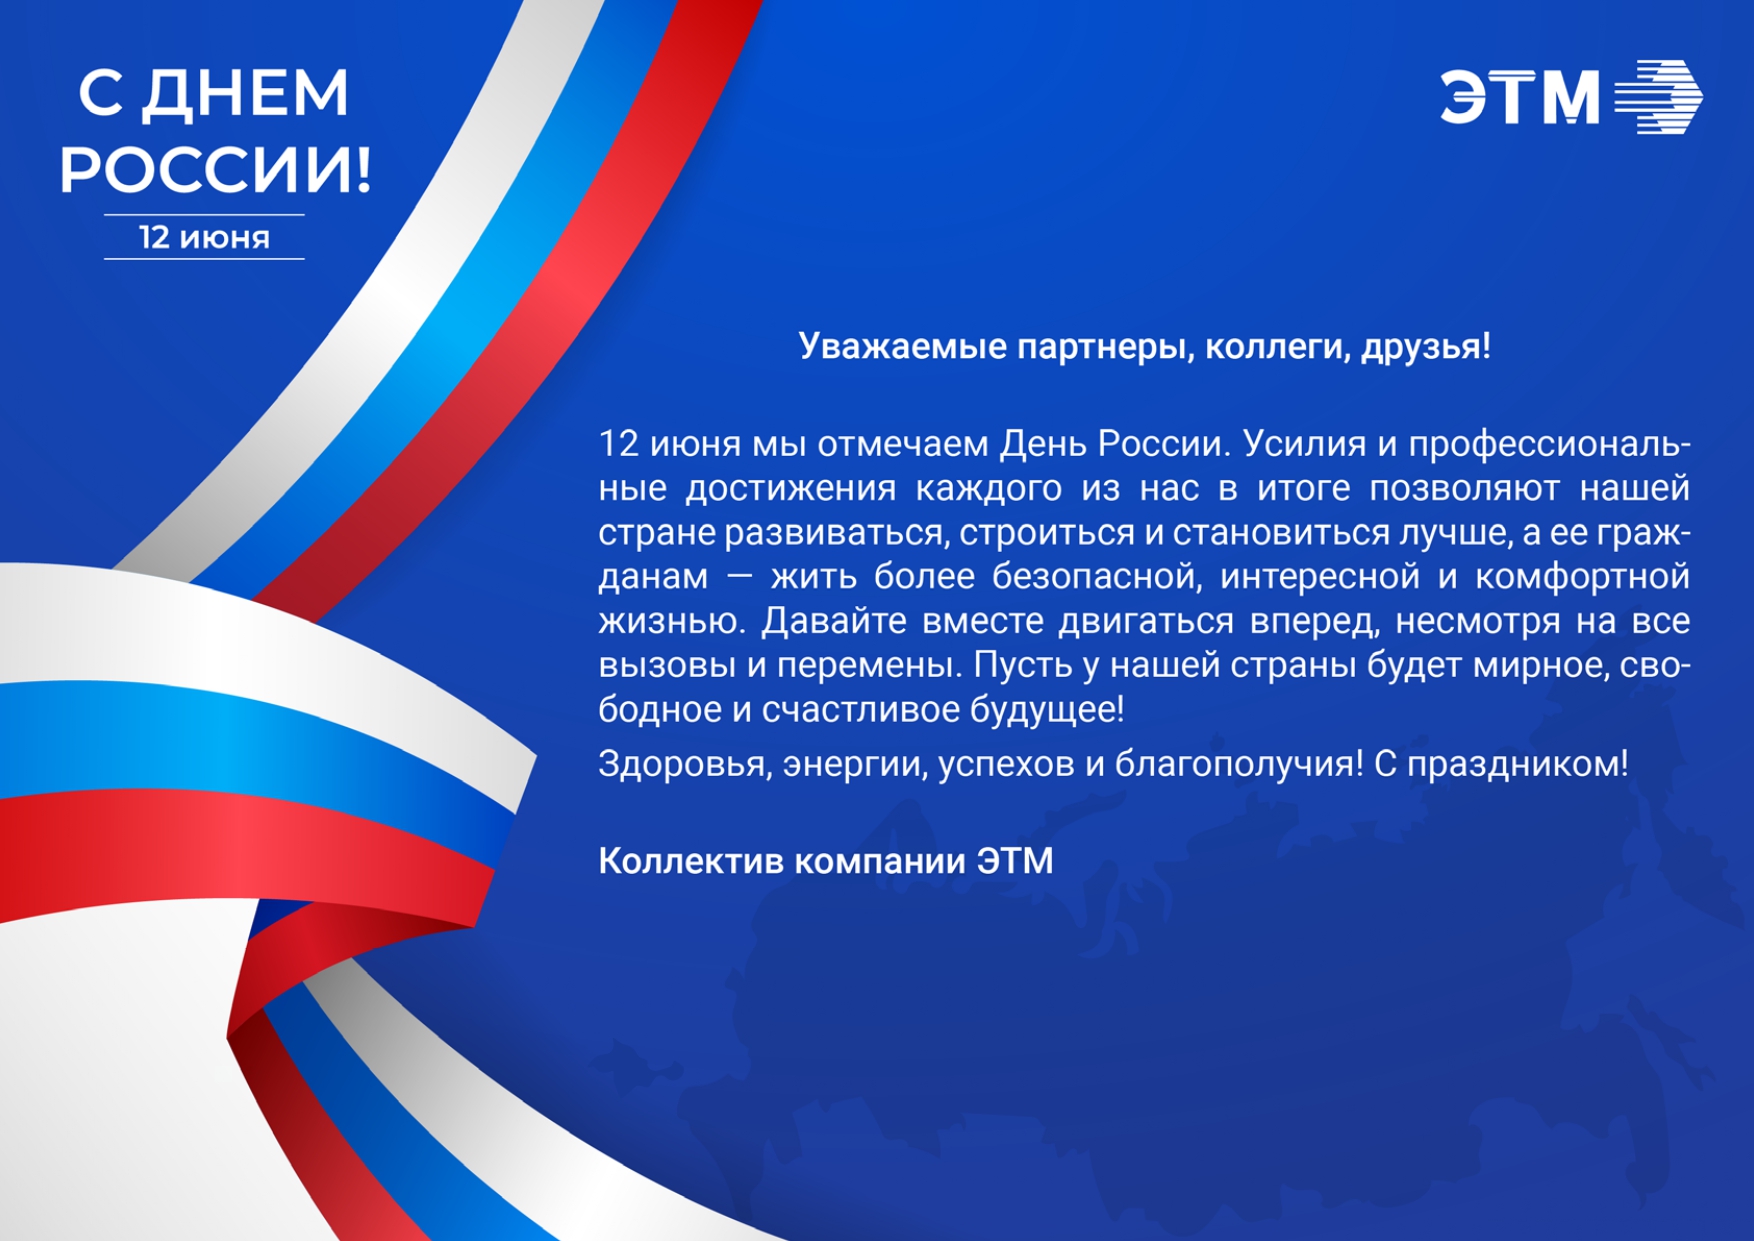 Компания ЭТМ поздравляет с Днем России!